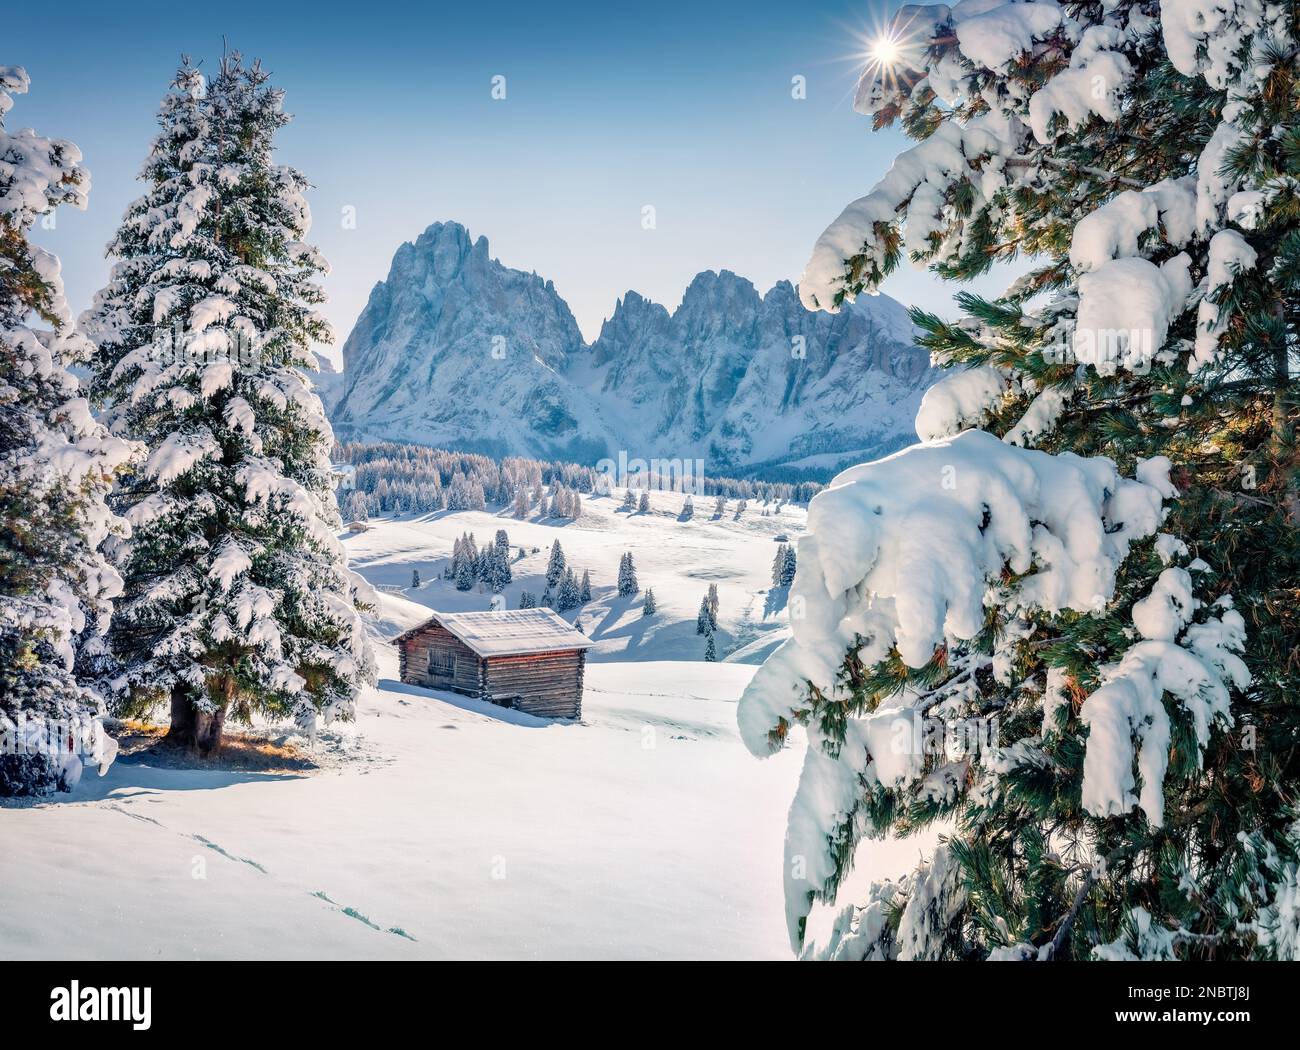 Weihnachtspostkarte. Fantastischer Winterblick auf das Dorf Alpe di Siusi mit Plattkofel-Gipfel im Hintergrund. Herrlicher Blick auf die Dolomiten am Morgen. Wunderbar Stockfoto